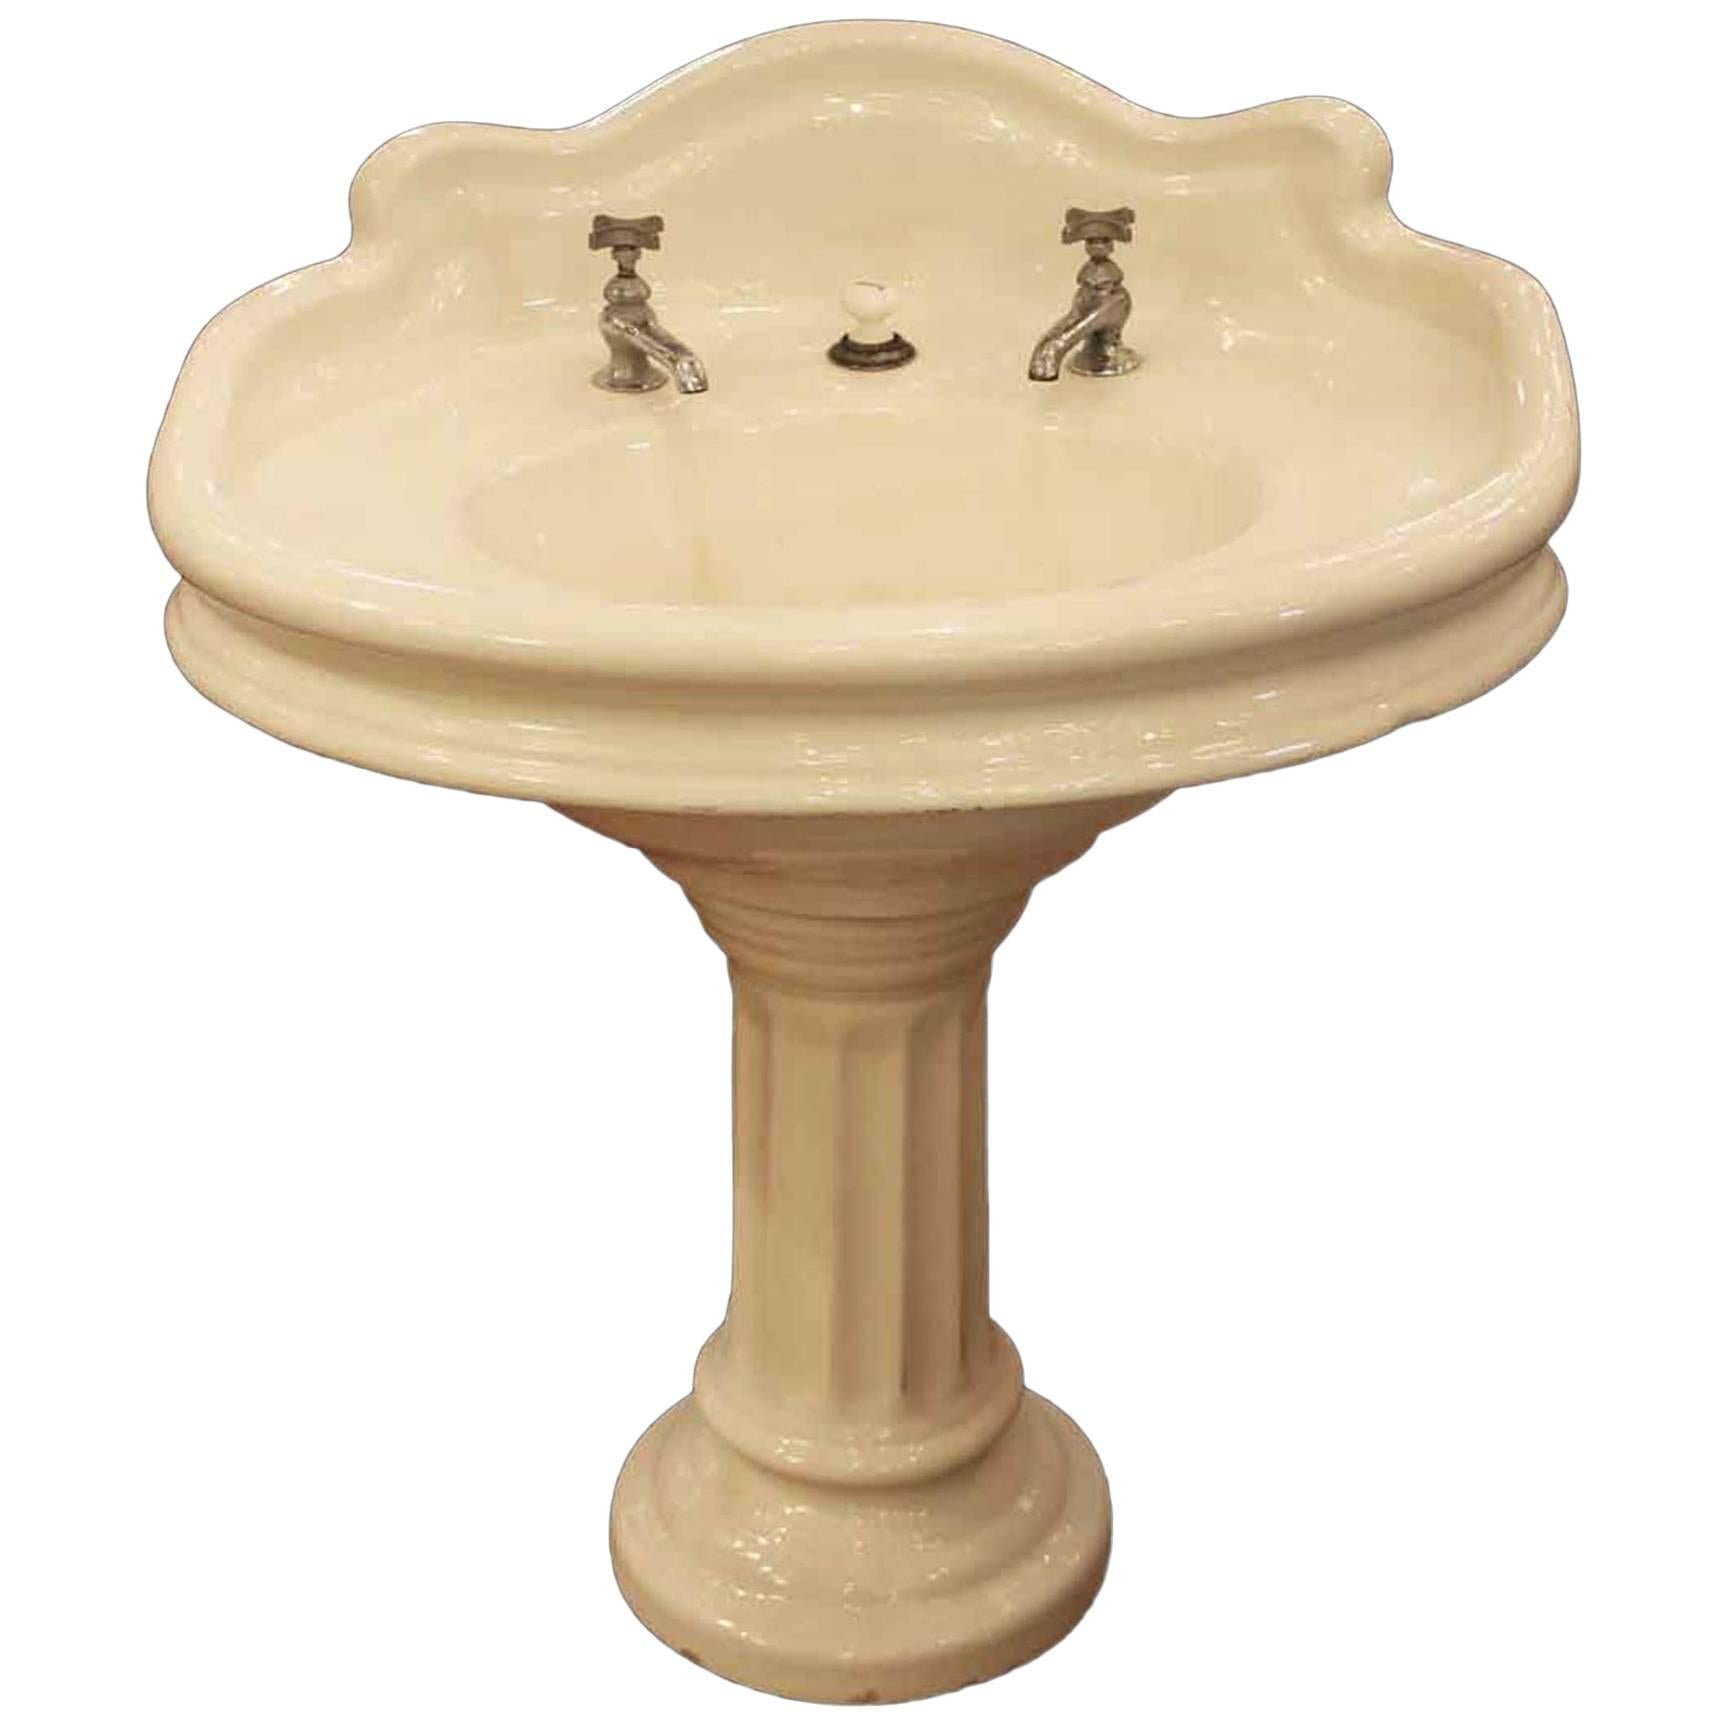 1900s Earthenware Pedestal Oval Sink with Back Splash and Original Hardware